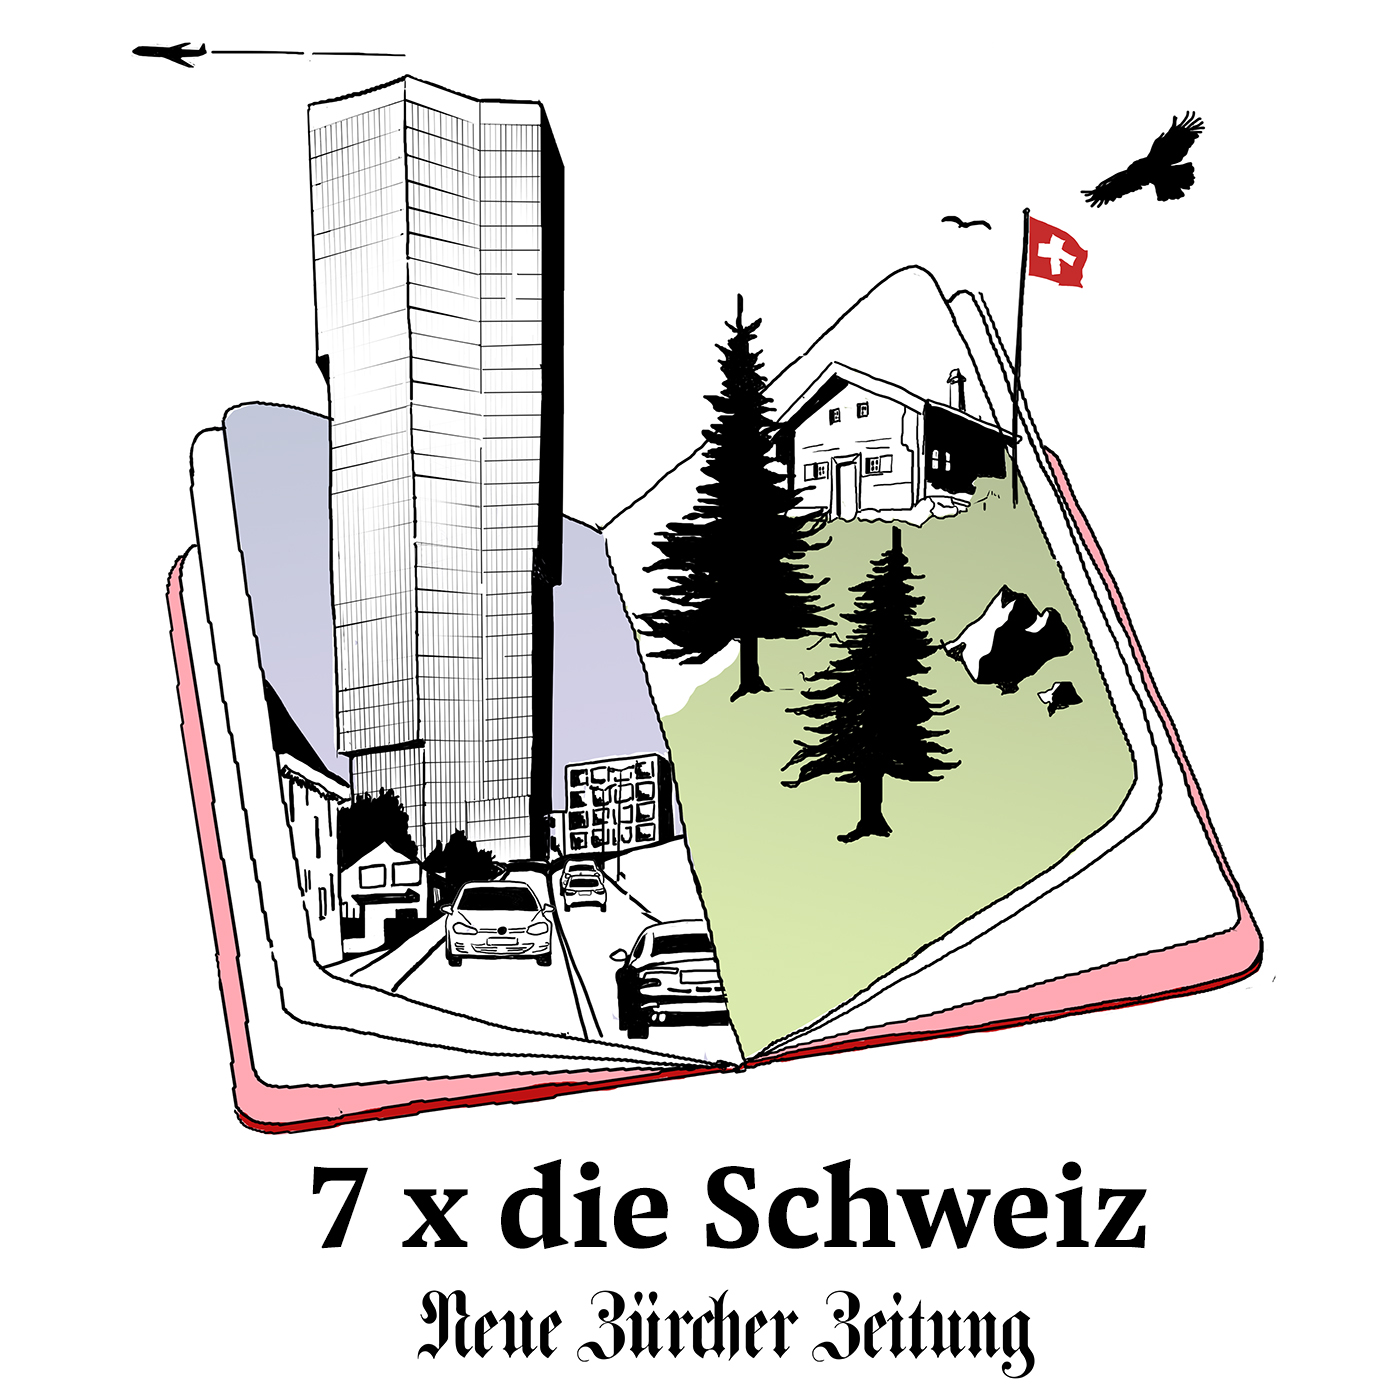 NZZ: 7 x die Schweiz